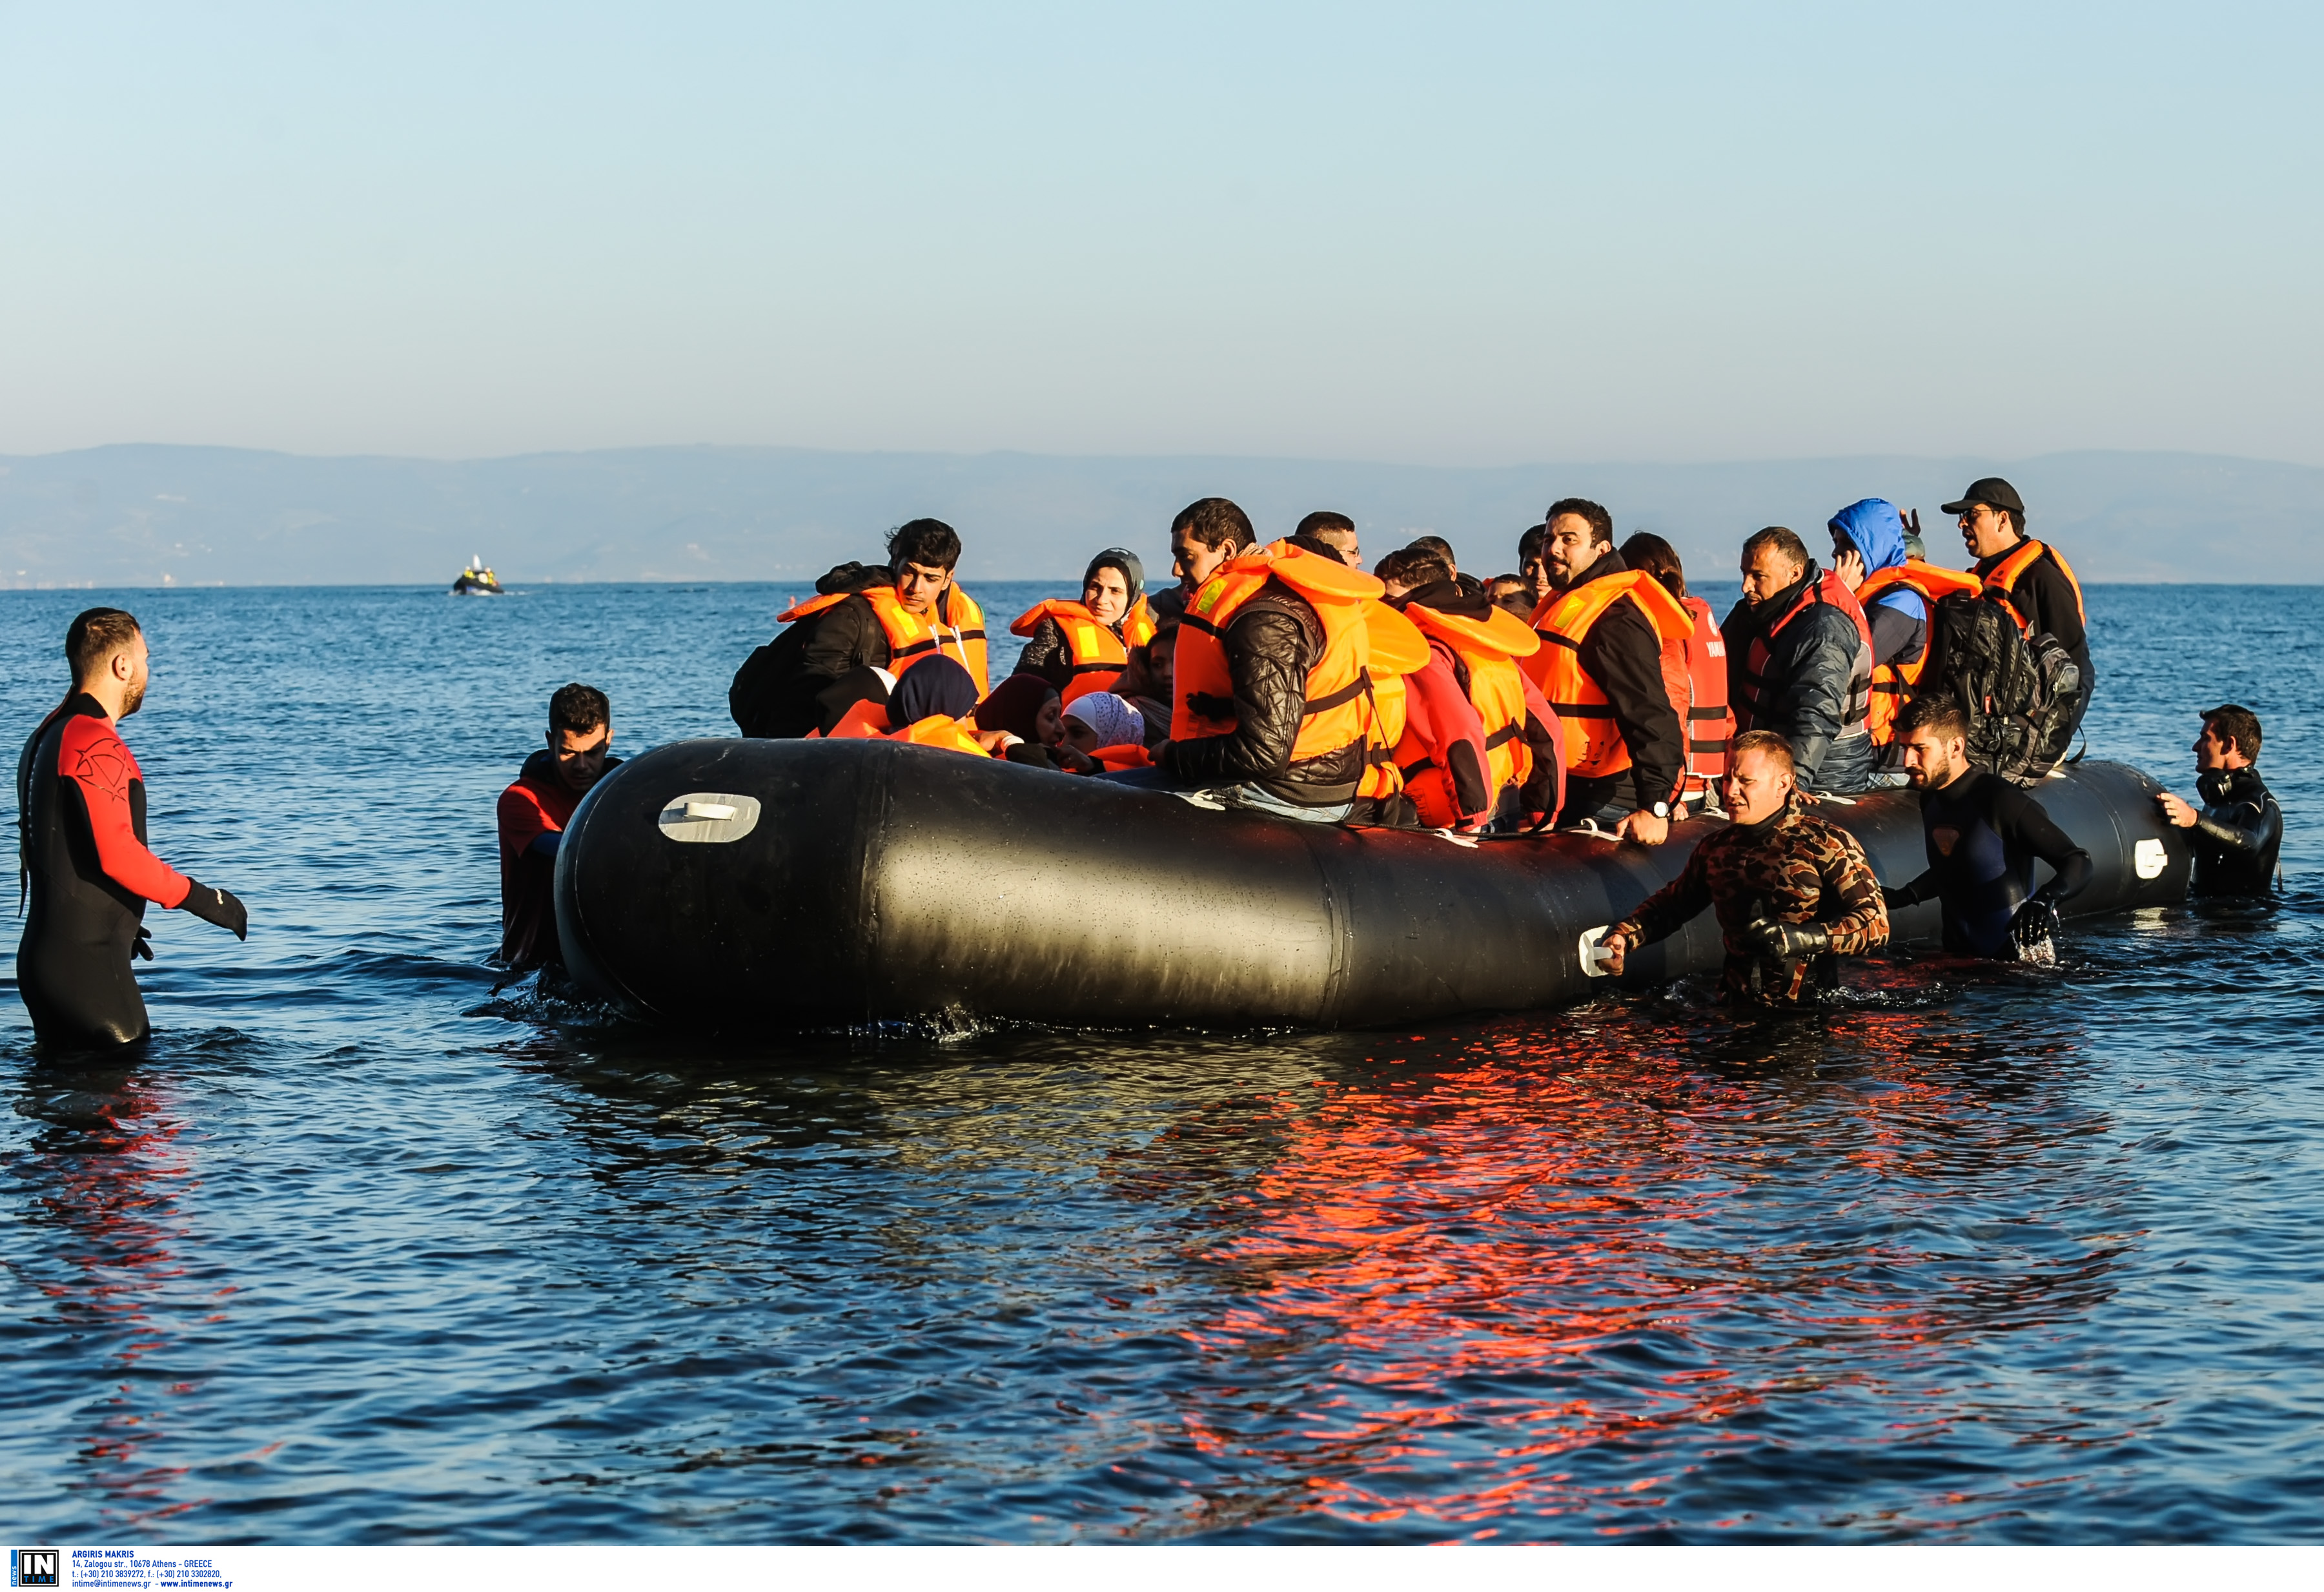 Λέσβος: Ασταμάτητες οι ροές προσφύγων και μεταναστών – Οι βάρκες φτάνουν η μία μετά την άλλη!